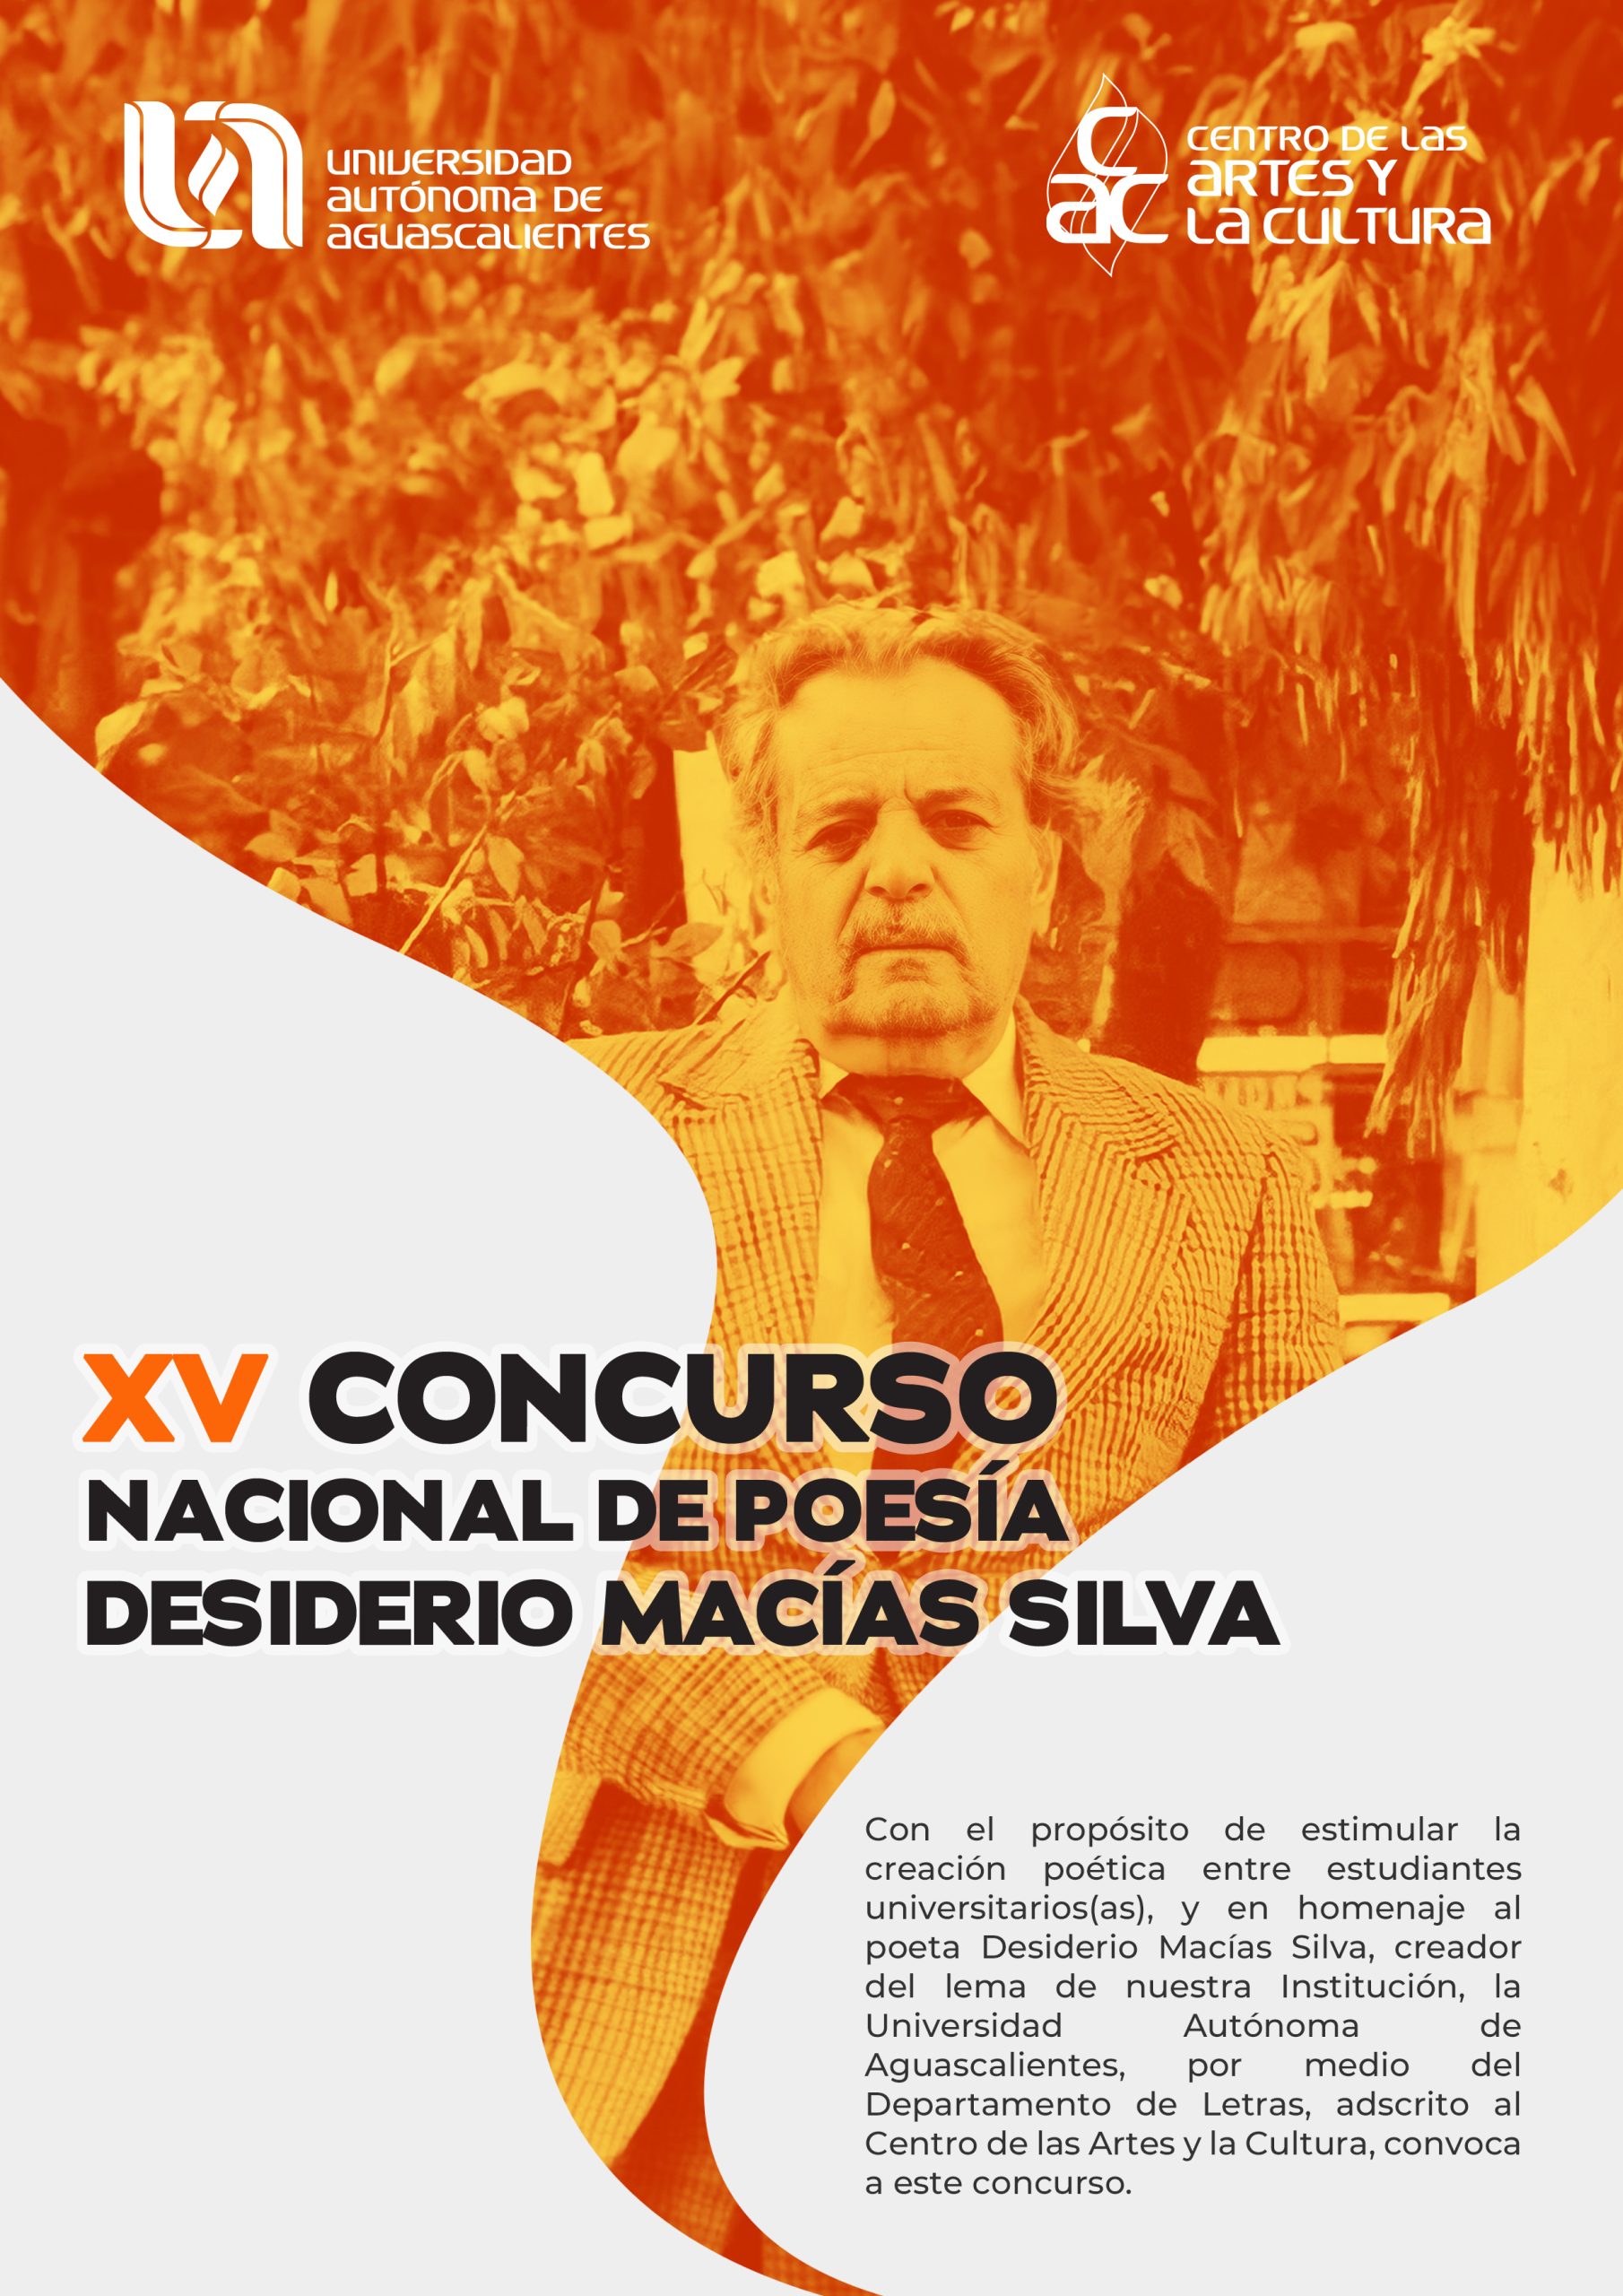 XV CONCURSO NACIONAL DE POESÍA DESIDERIO MACÍAS SILVA